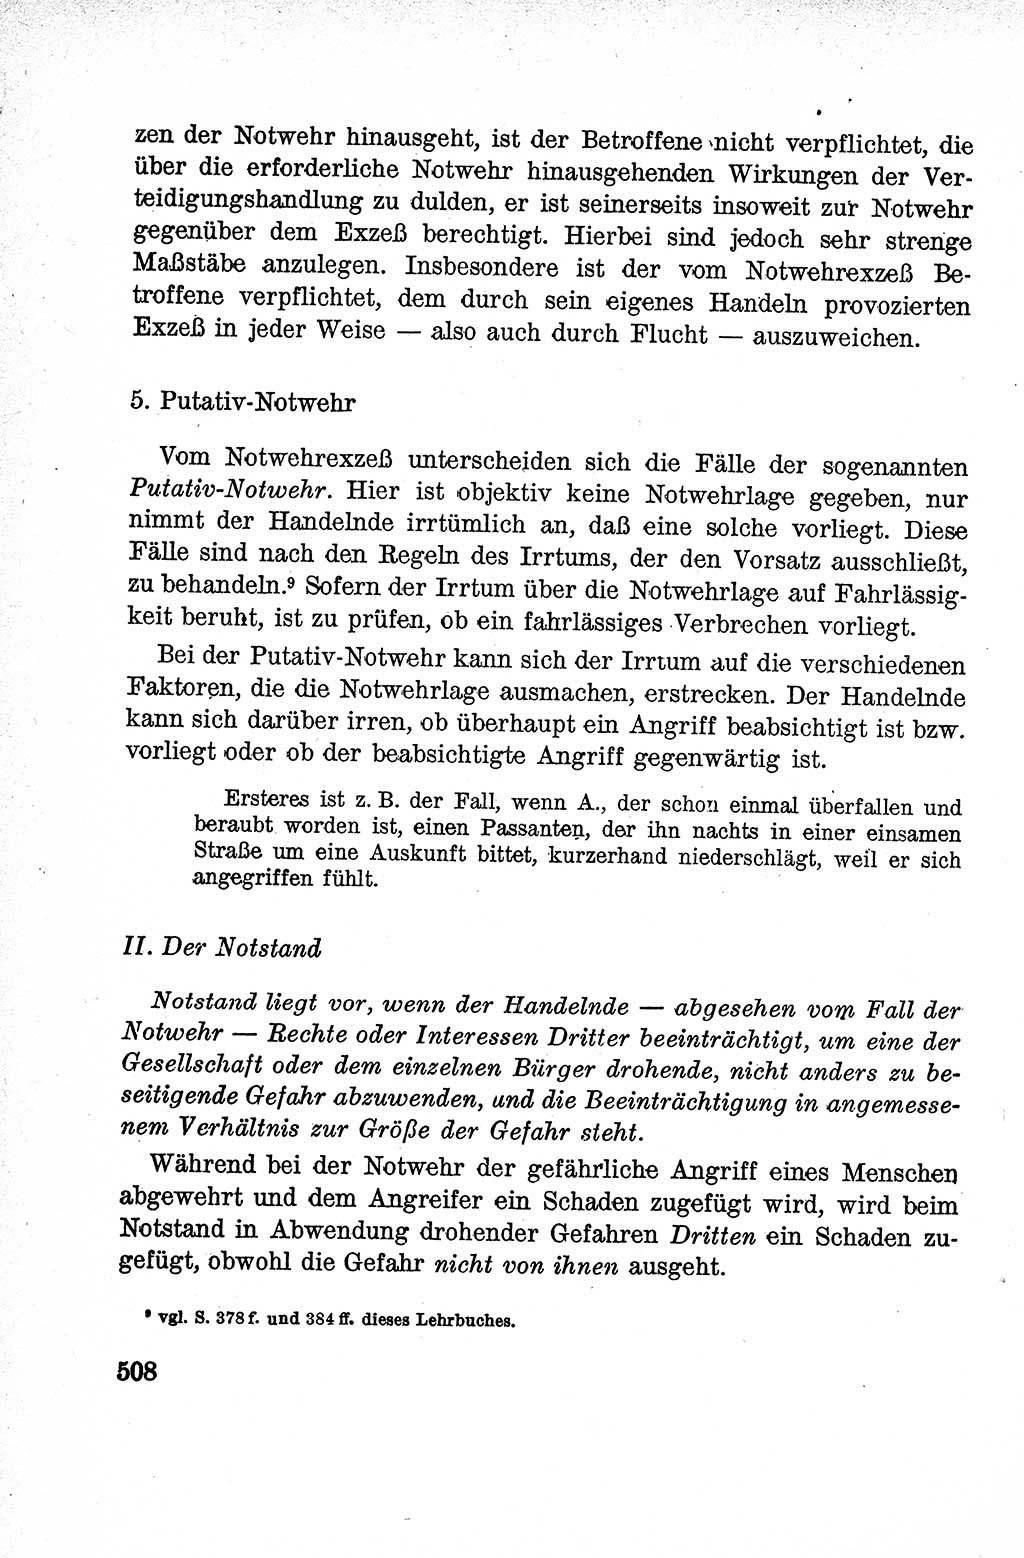 Lehrbuch des Strafrechts der Deutschen Demokratischen Republik (DDR), Allgemeiner Teil 1959, Seite 508 (Lb. Strafr. DDR AT 1959, S. 508)